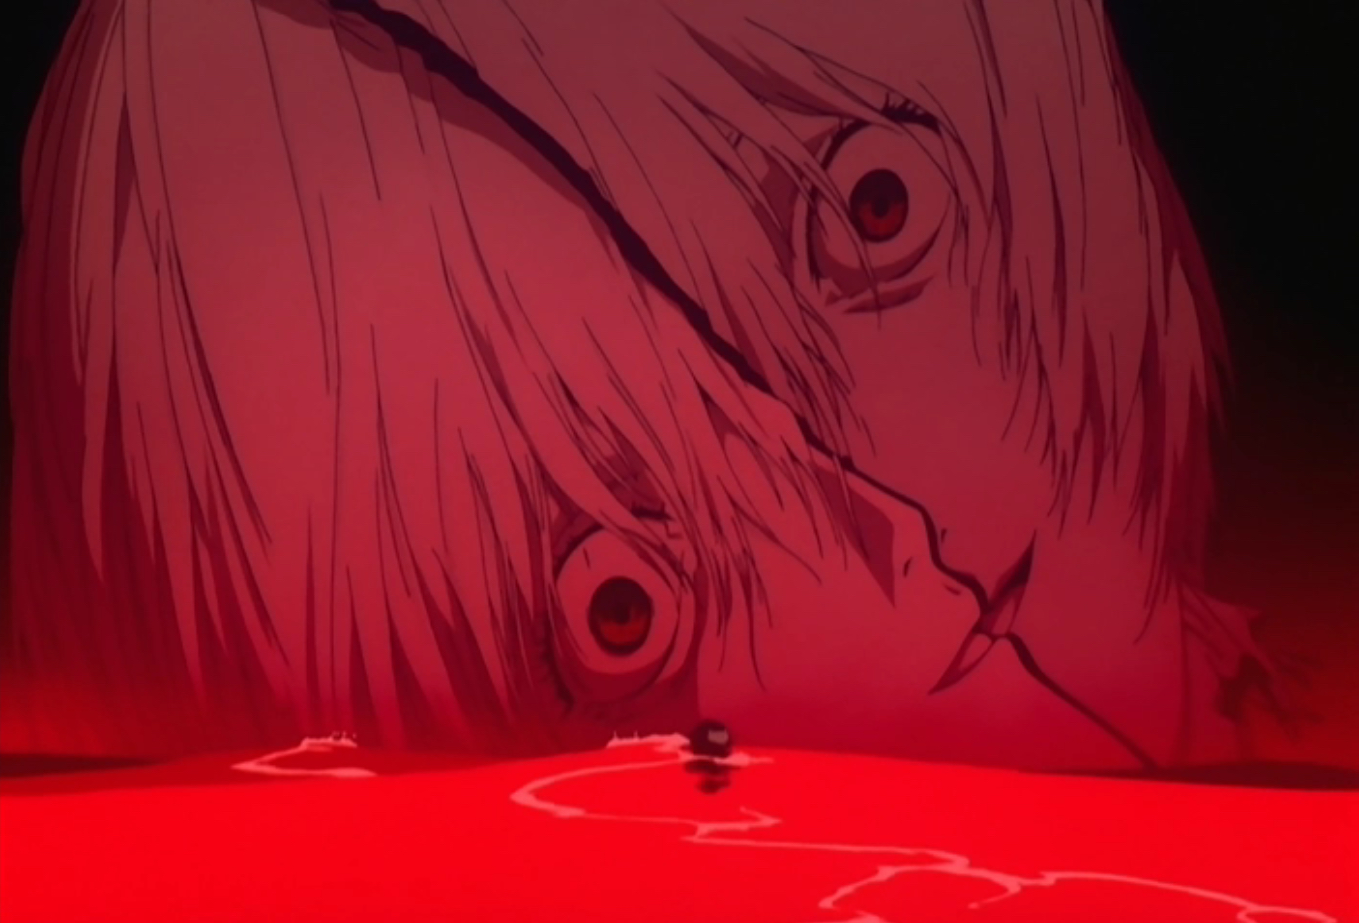 Netflix Neuer Trailer zum HorrorAnime Junji Ito Maniac  Anime2You